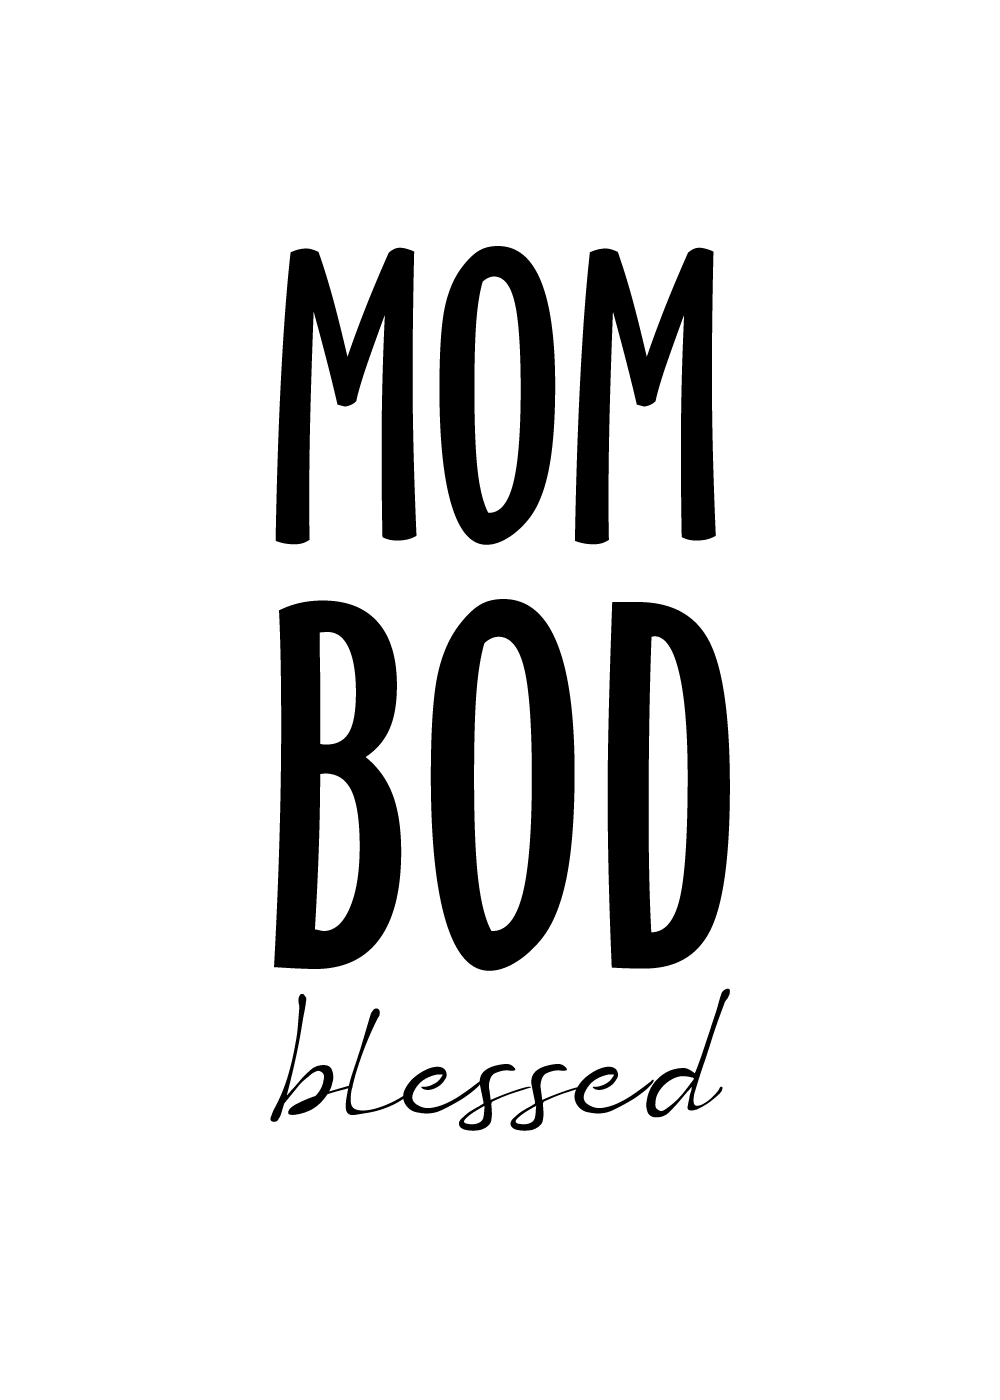 Billede af Mom bod - Body positivity plakat